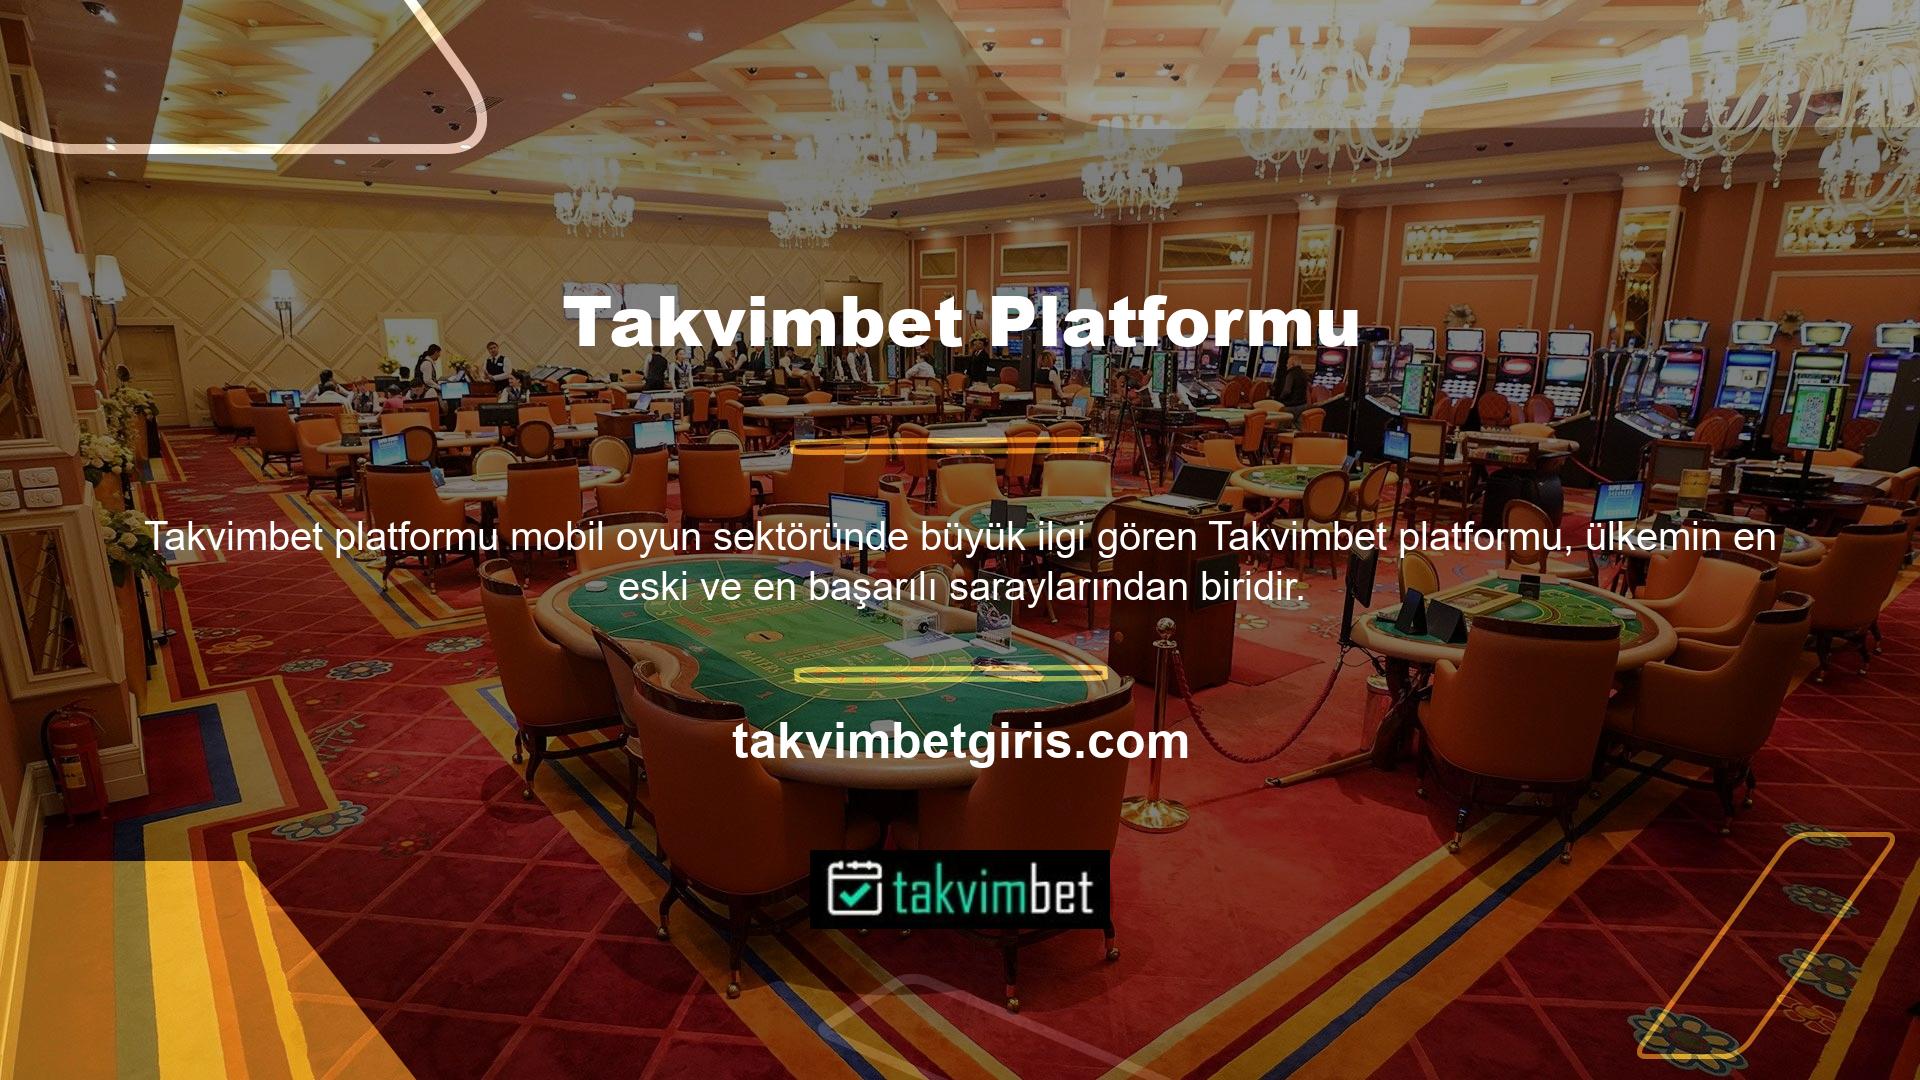 Online casino hizmeti veren platform, çok sayıda kullanıcısı ile ülkemizin en iyilerinden biridir